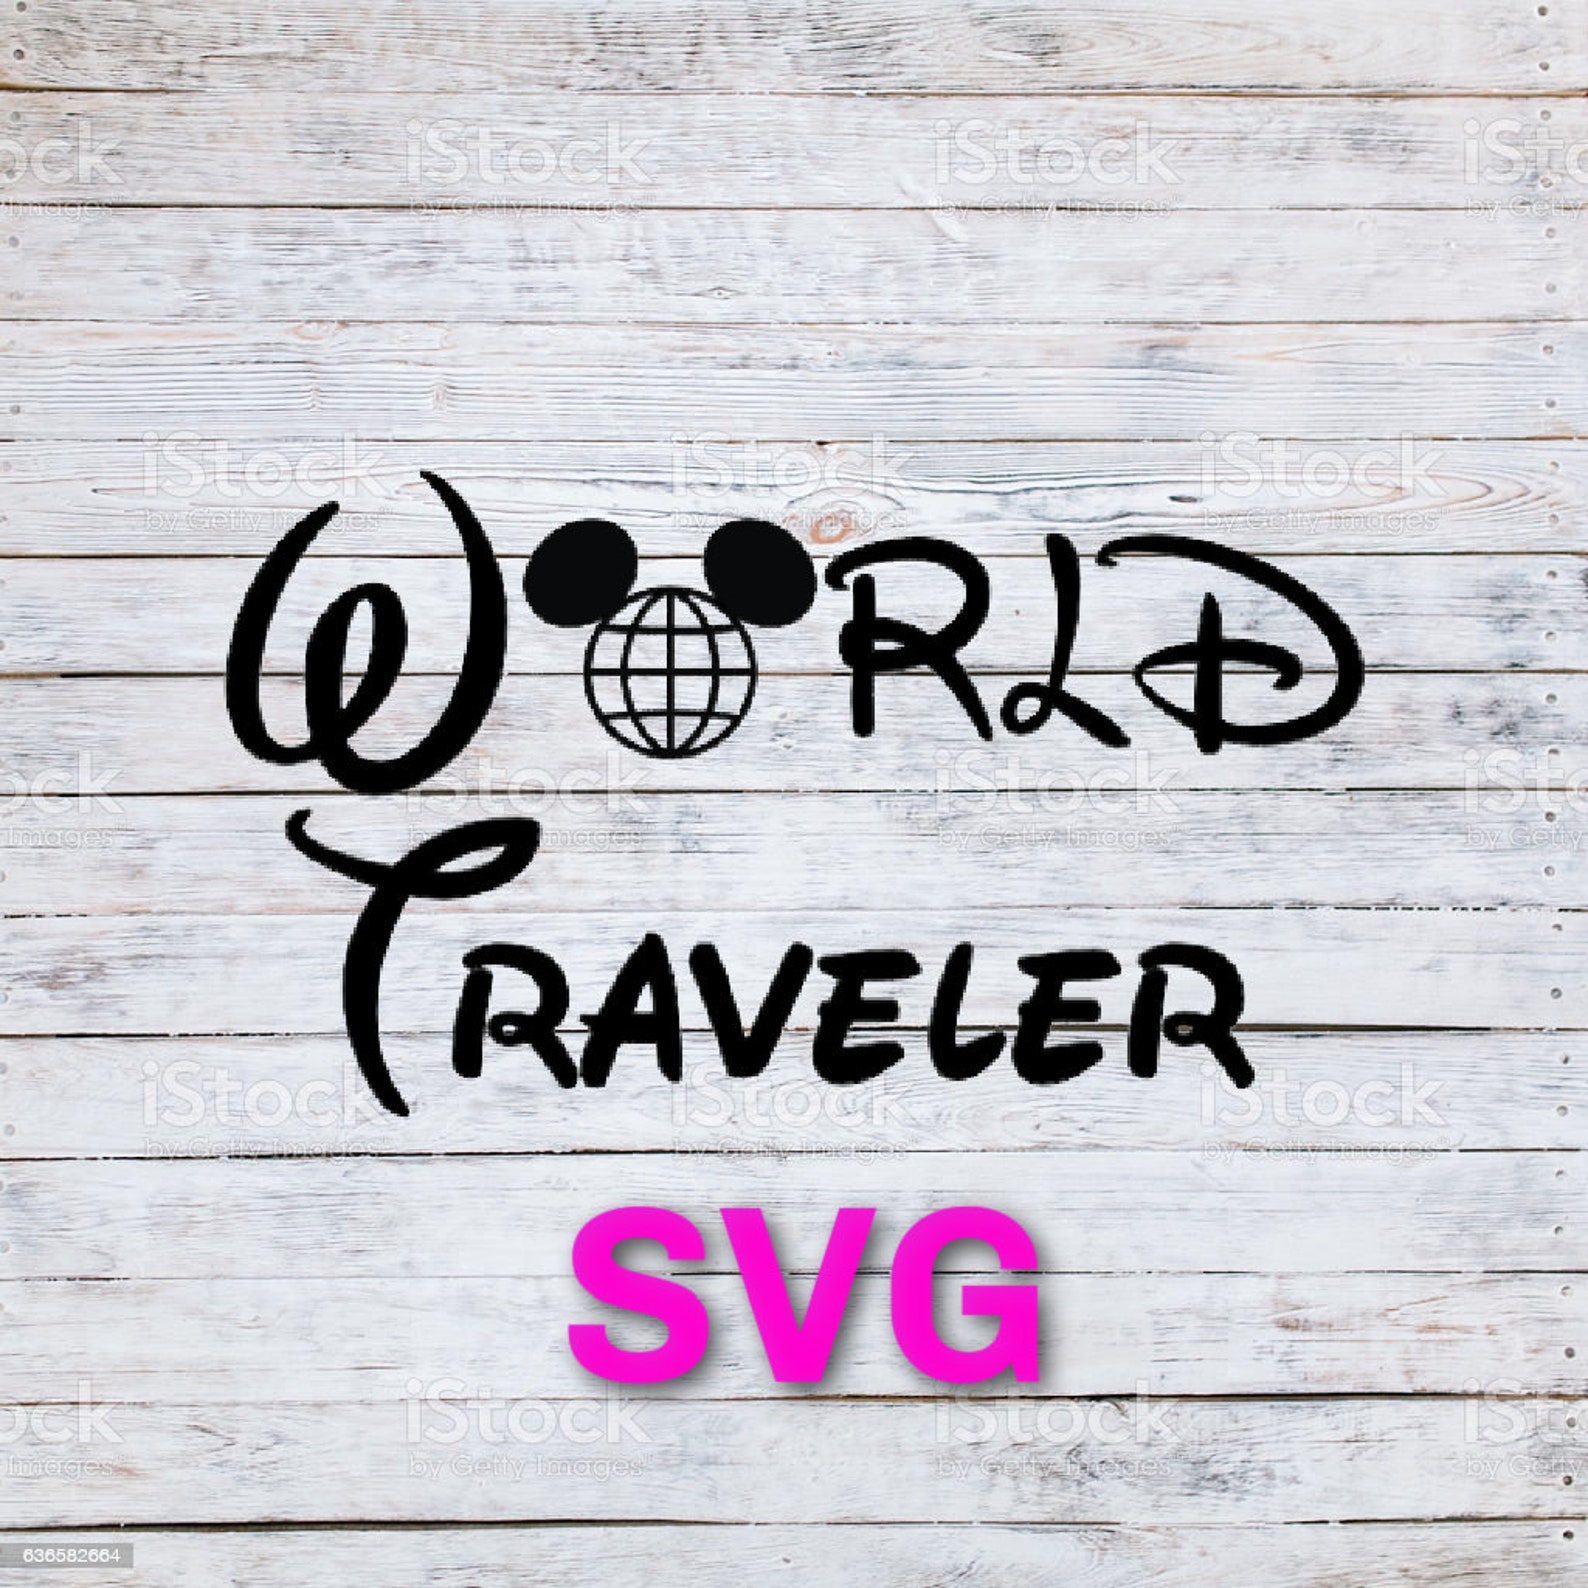 Disney World svg Disney World traveler svg Disney vacation | Etsy